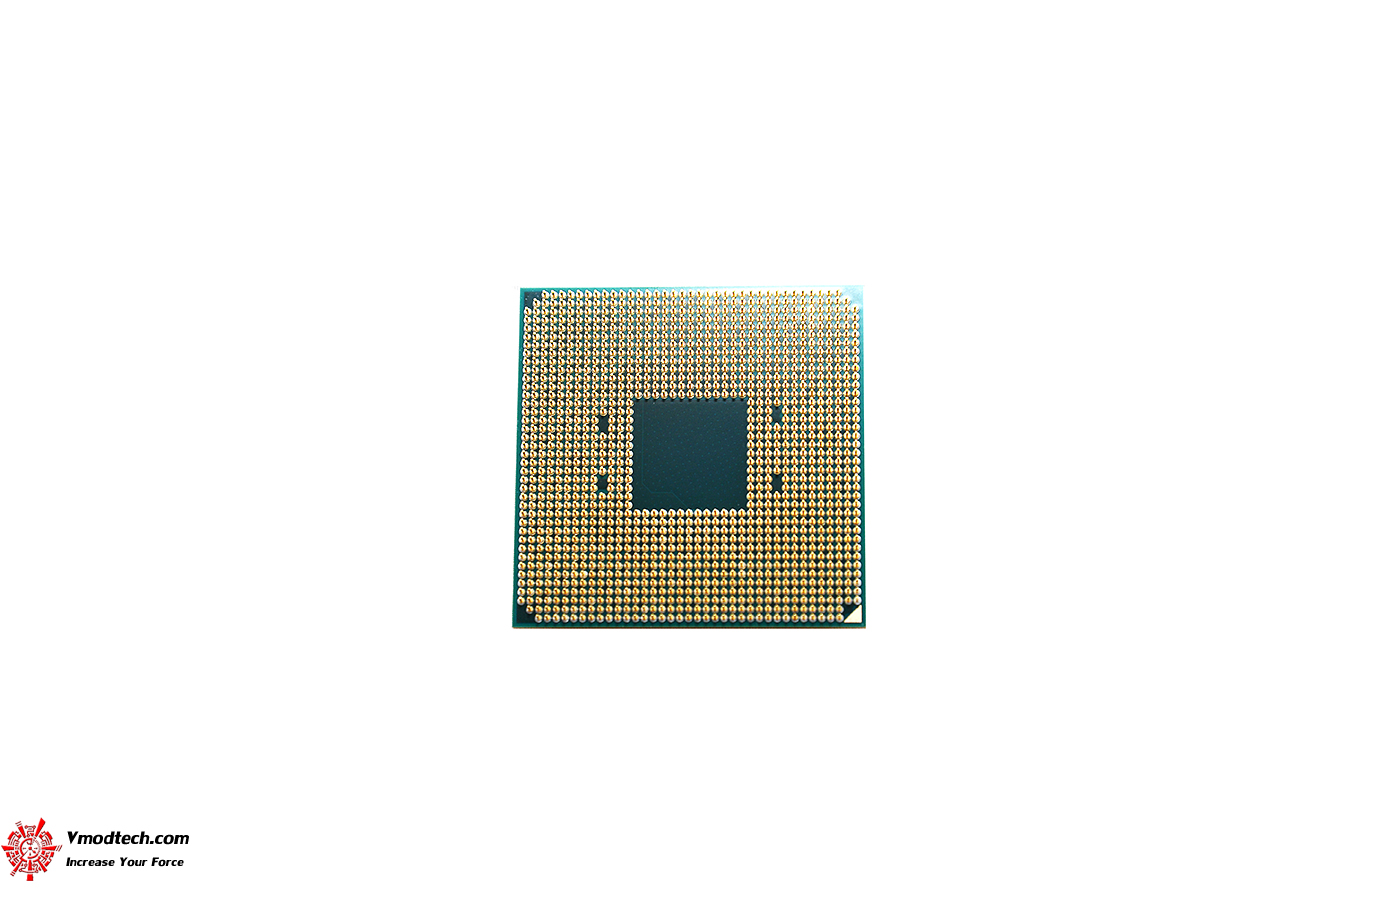 dsc 5854 AMD RYZEN 7 1800X REVIEW 